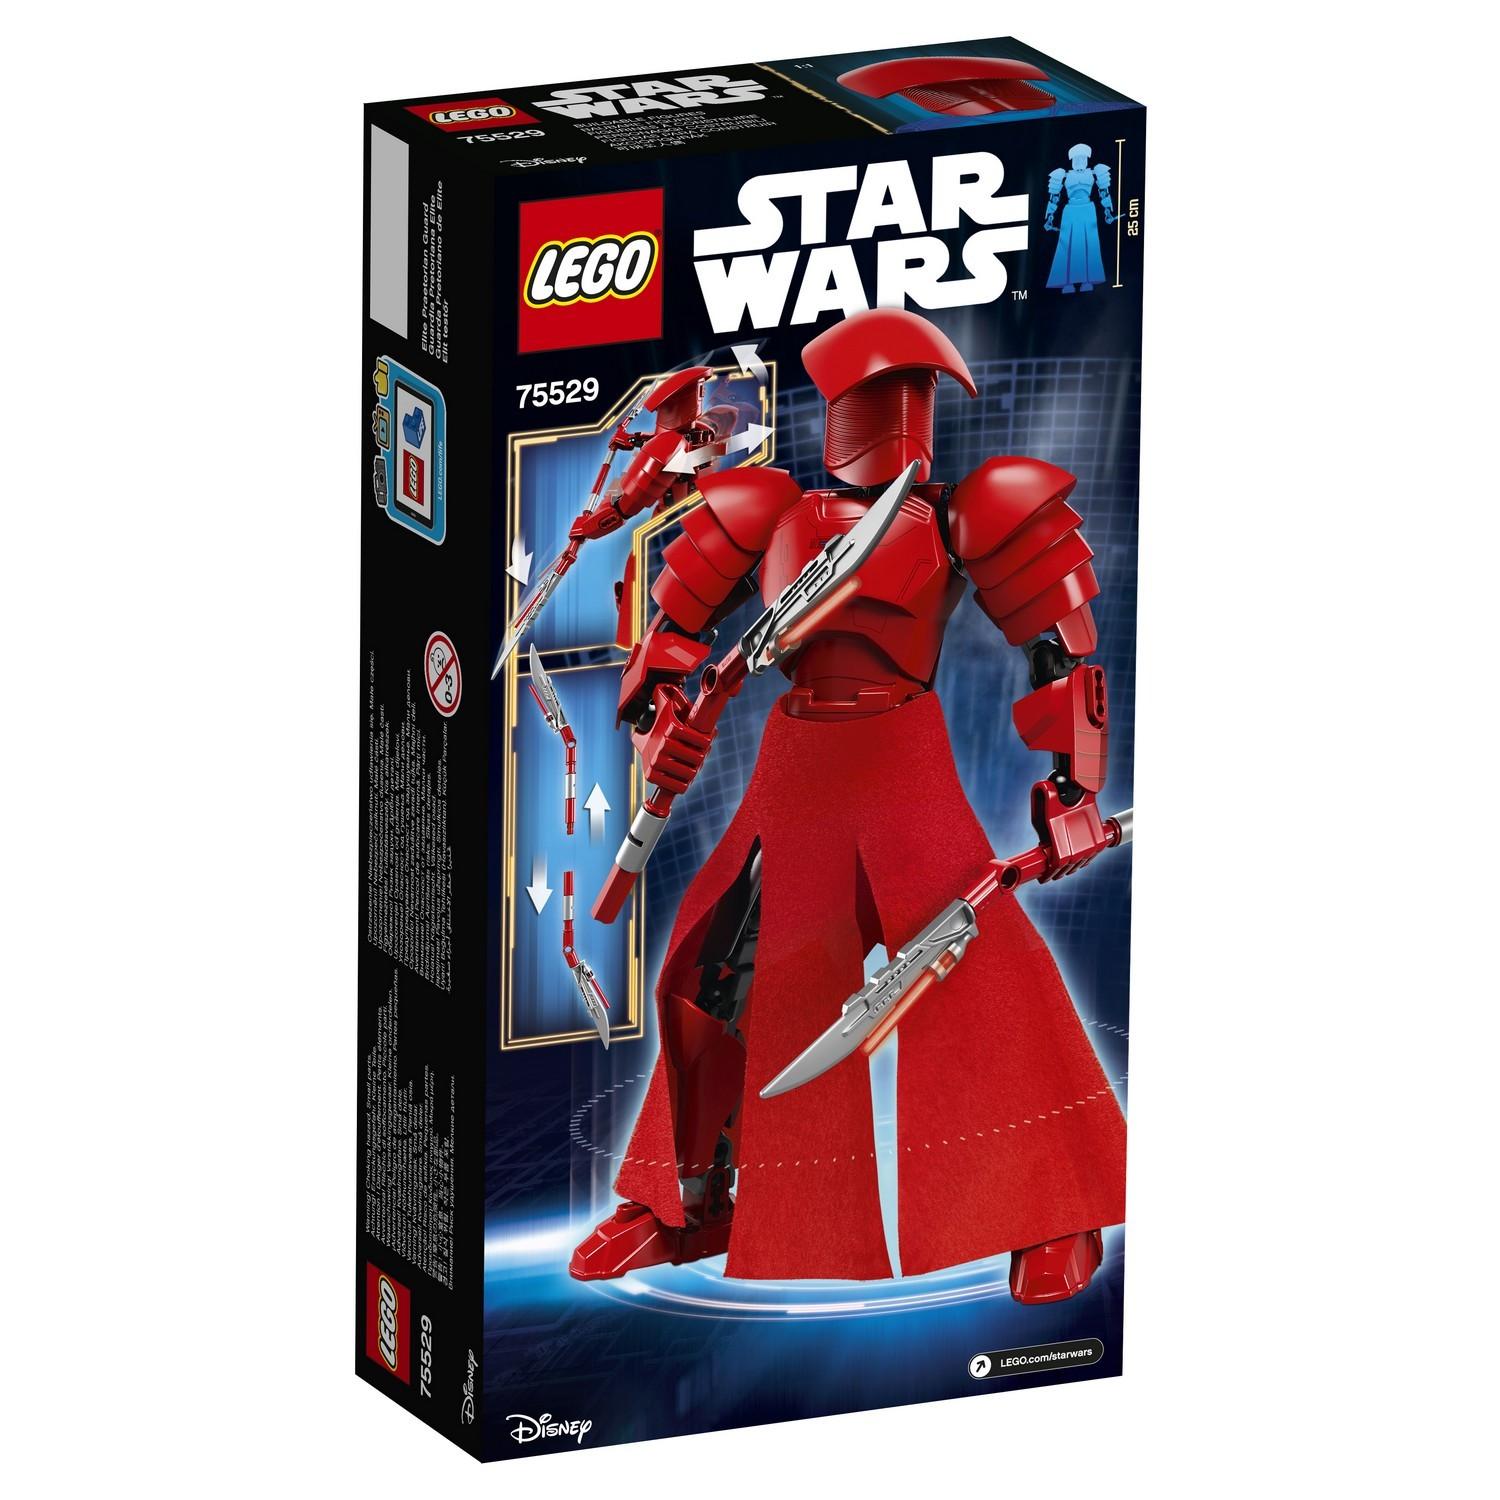 Lego Star Wars 75529 Элитный преторианский страж